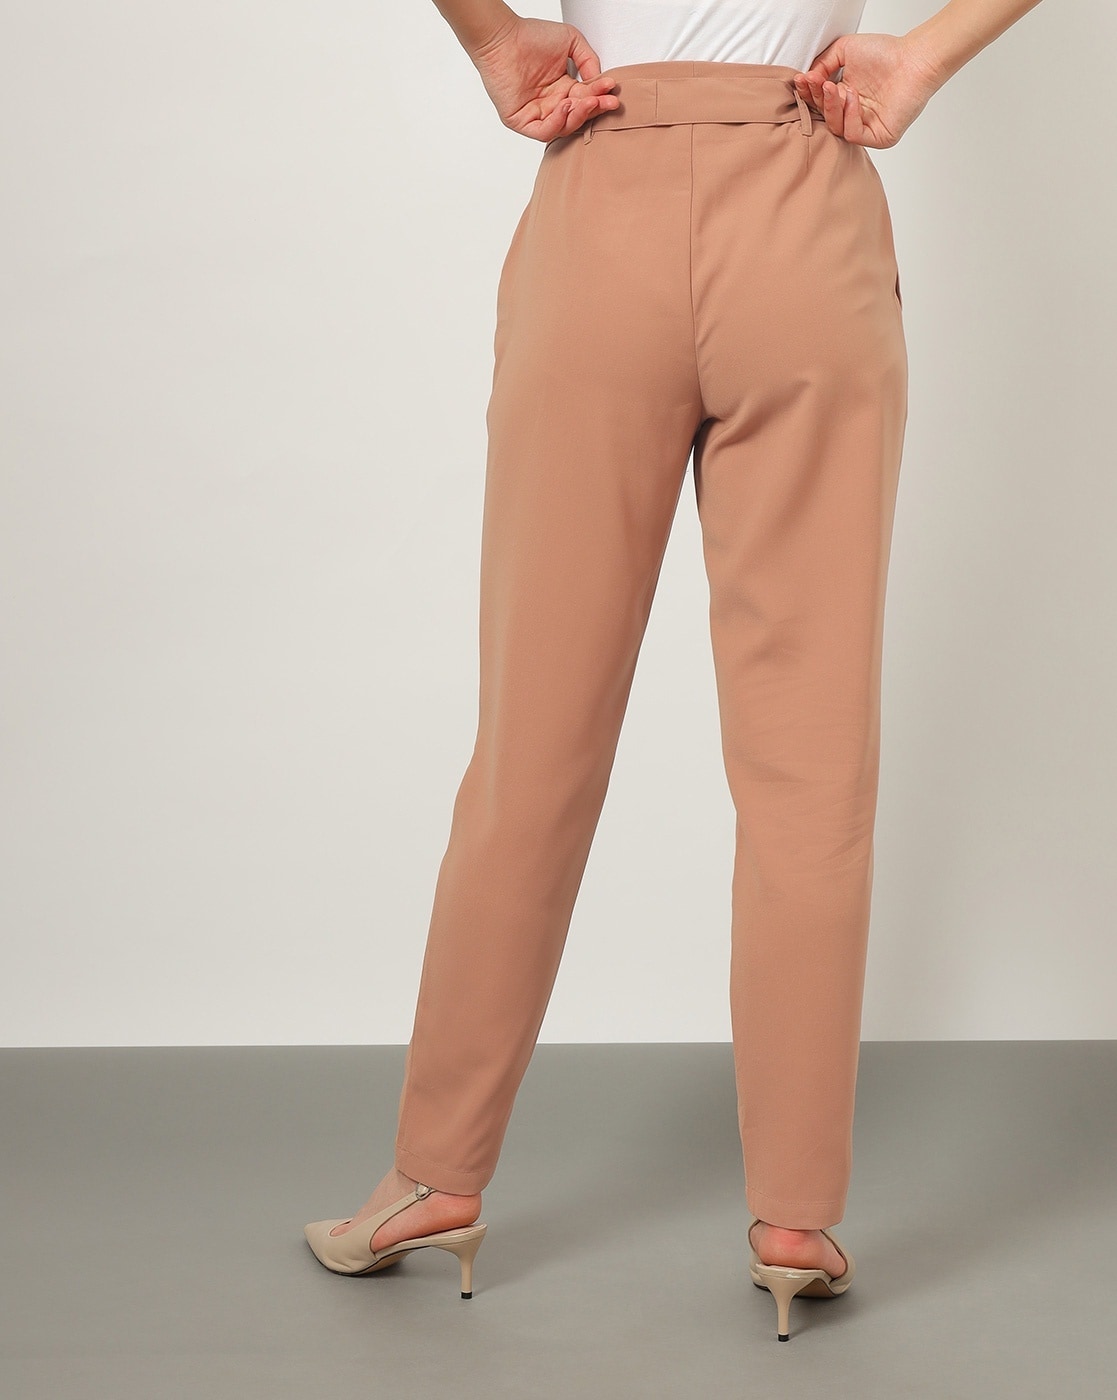 Brown Womens Trousers  Buy Brown Womens Trousers Online at Best Prices In  India  Flipkartcom